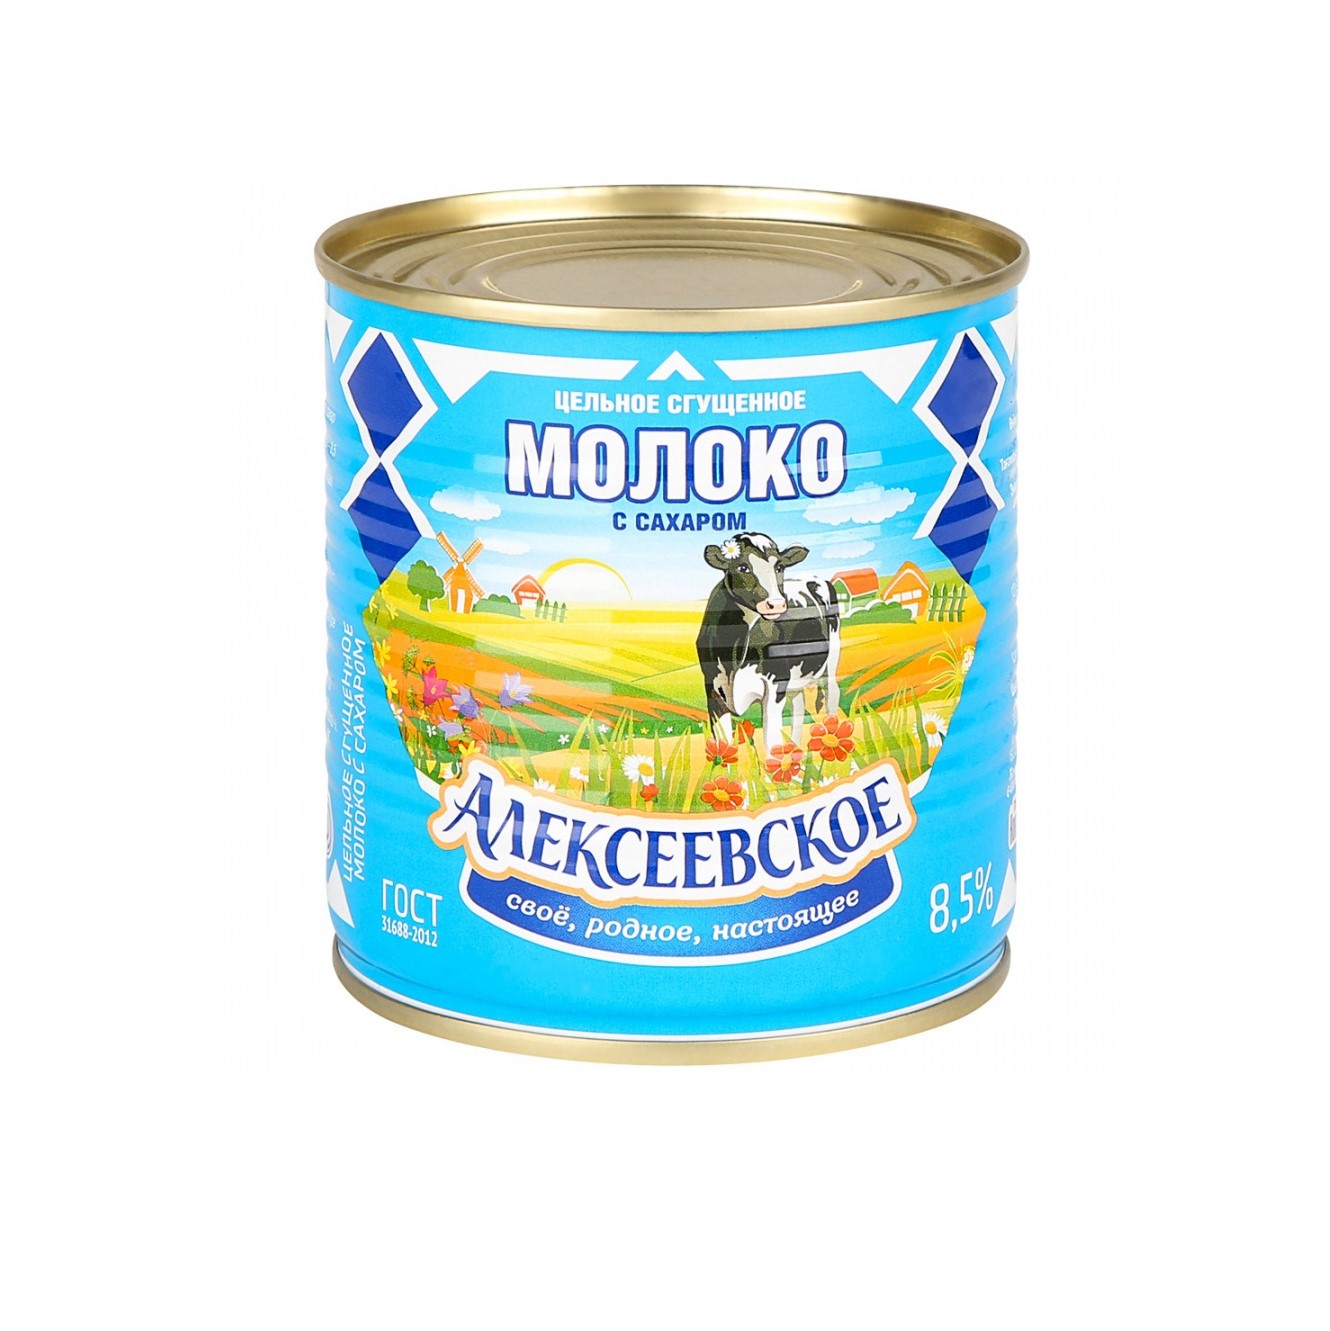 Молоко Алексеевское сгущенное с сахаром 8,5%, 360 г молоко сгущенное батькин резерв цельное пастеризованное с сахаром 8 5% 270 г